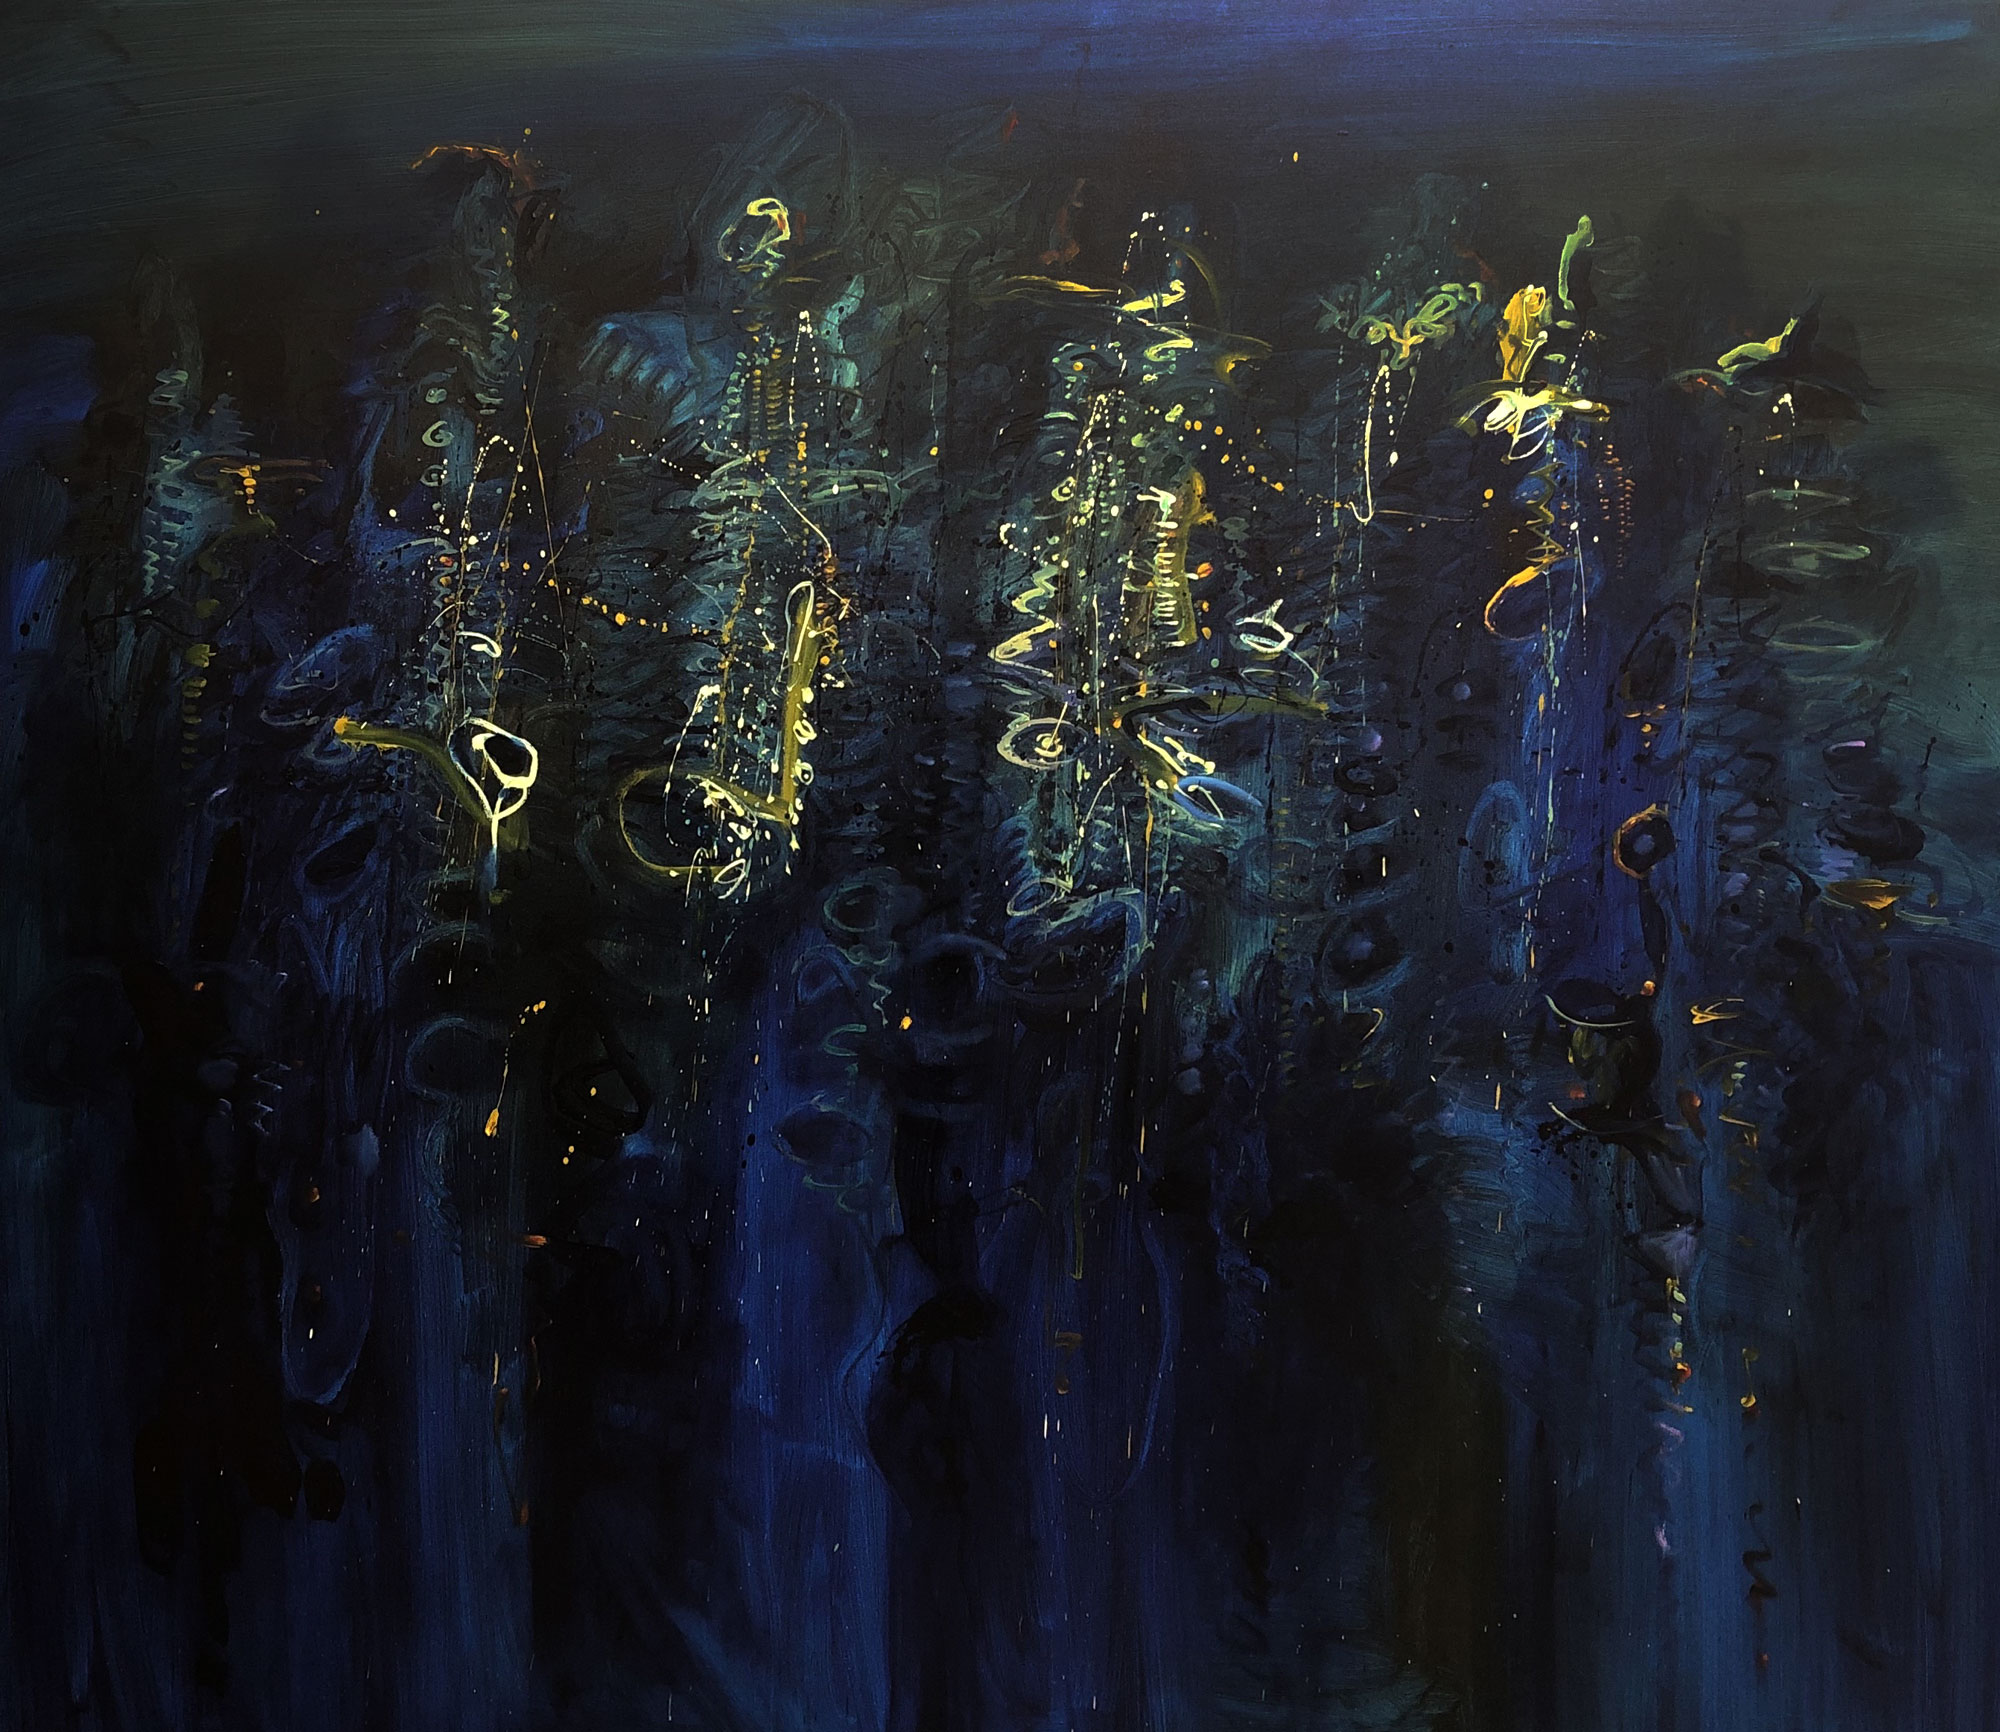 006-Los-saxofones-de-Rembrandt-IV-2019-oleo-sobre-tela-de-180-x-200-cm